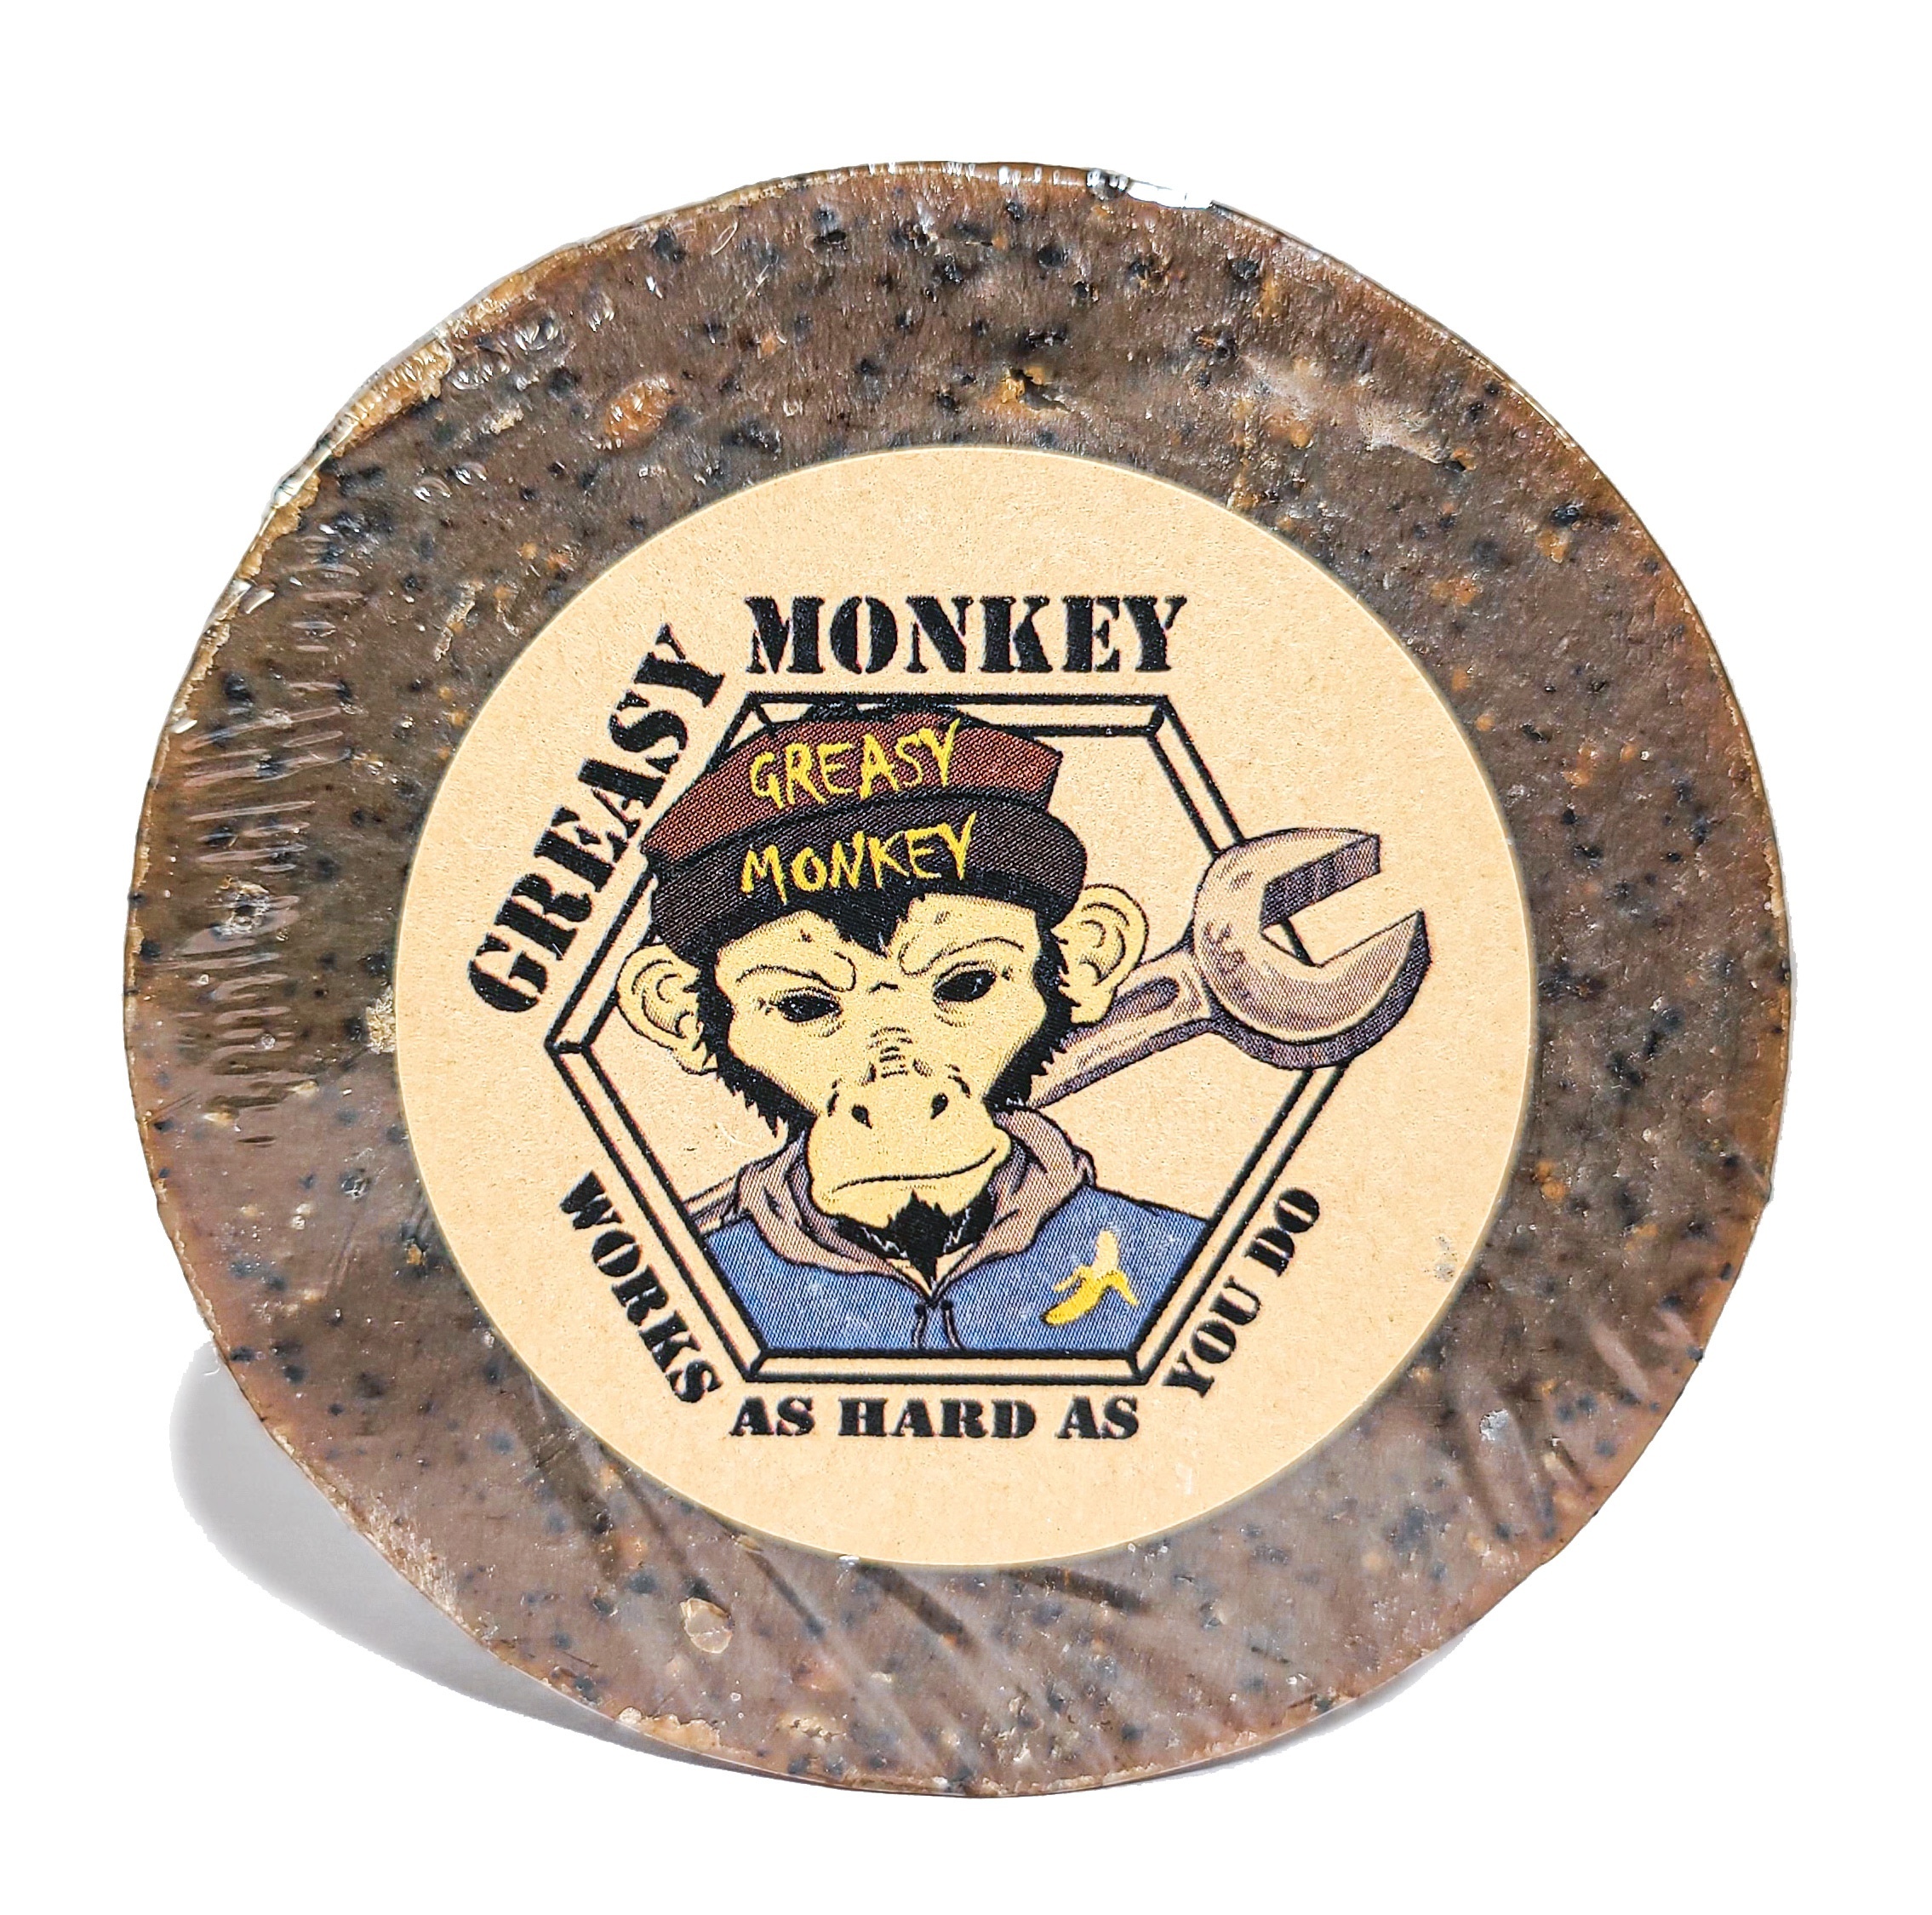 greasy monkey product image